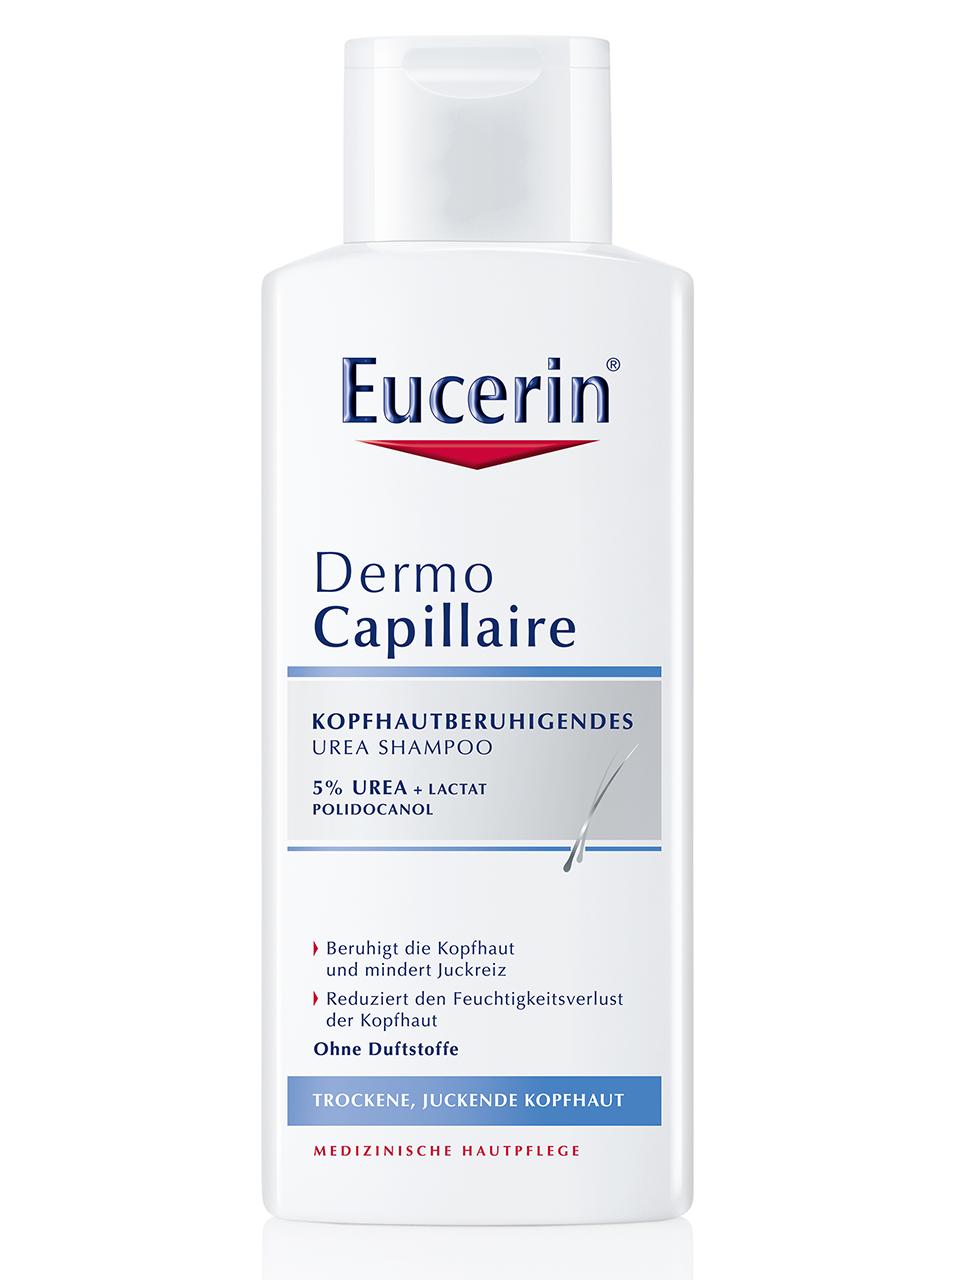 Eucerin DermoCapillaire Shampoo Urea Kopfhautberuhigend